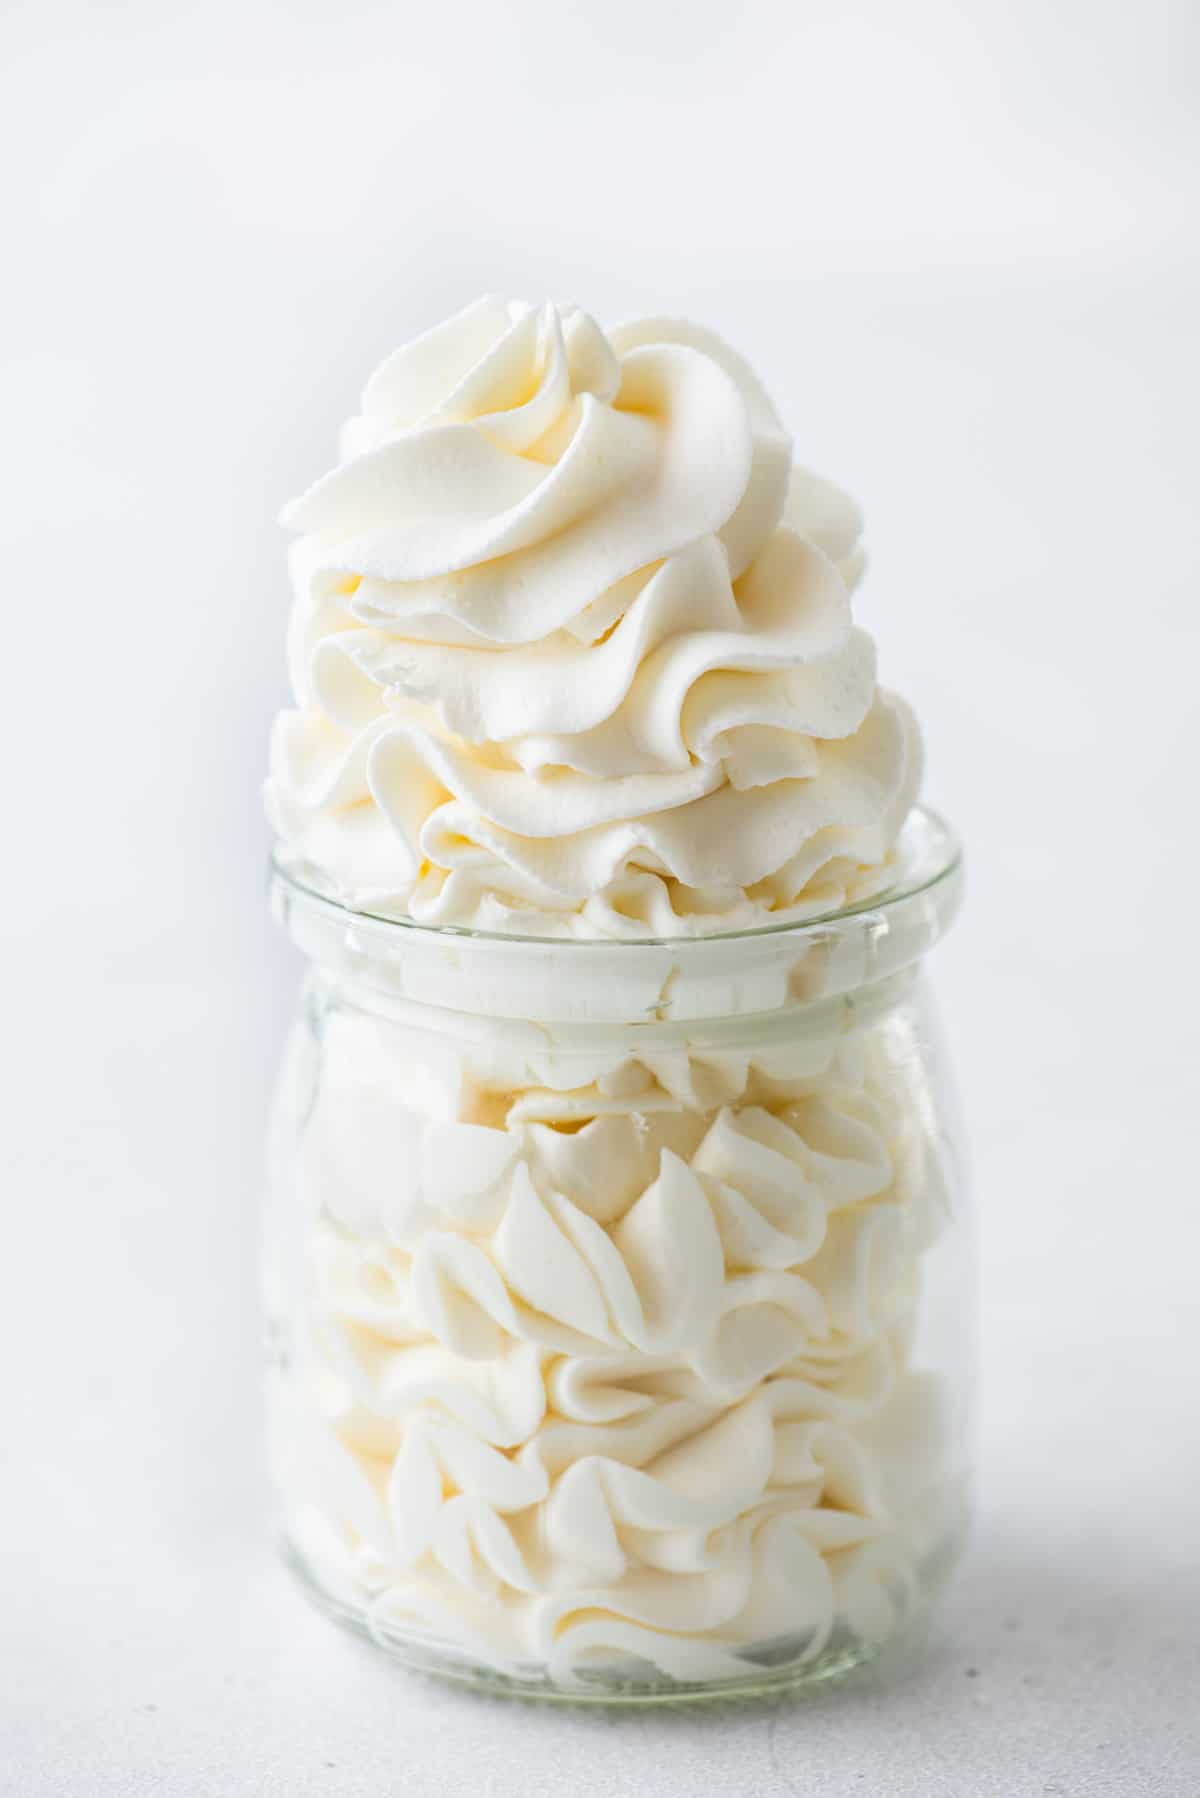 a glass jar full of homemade fresh whipped cream